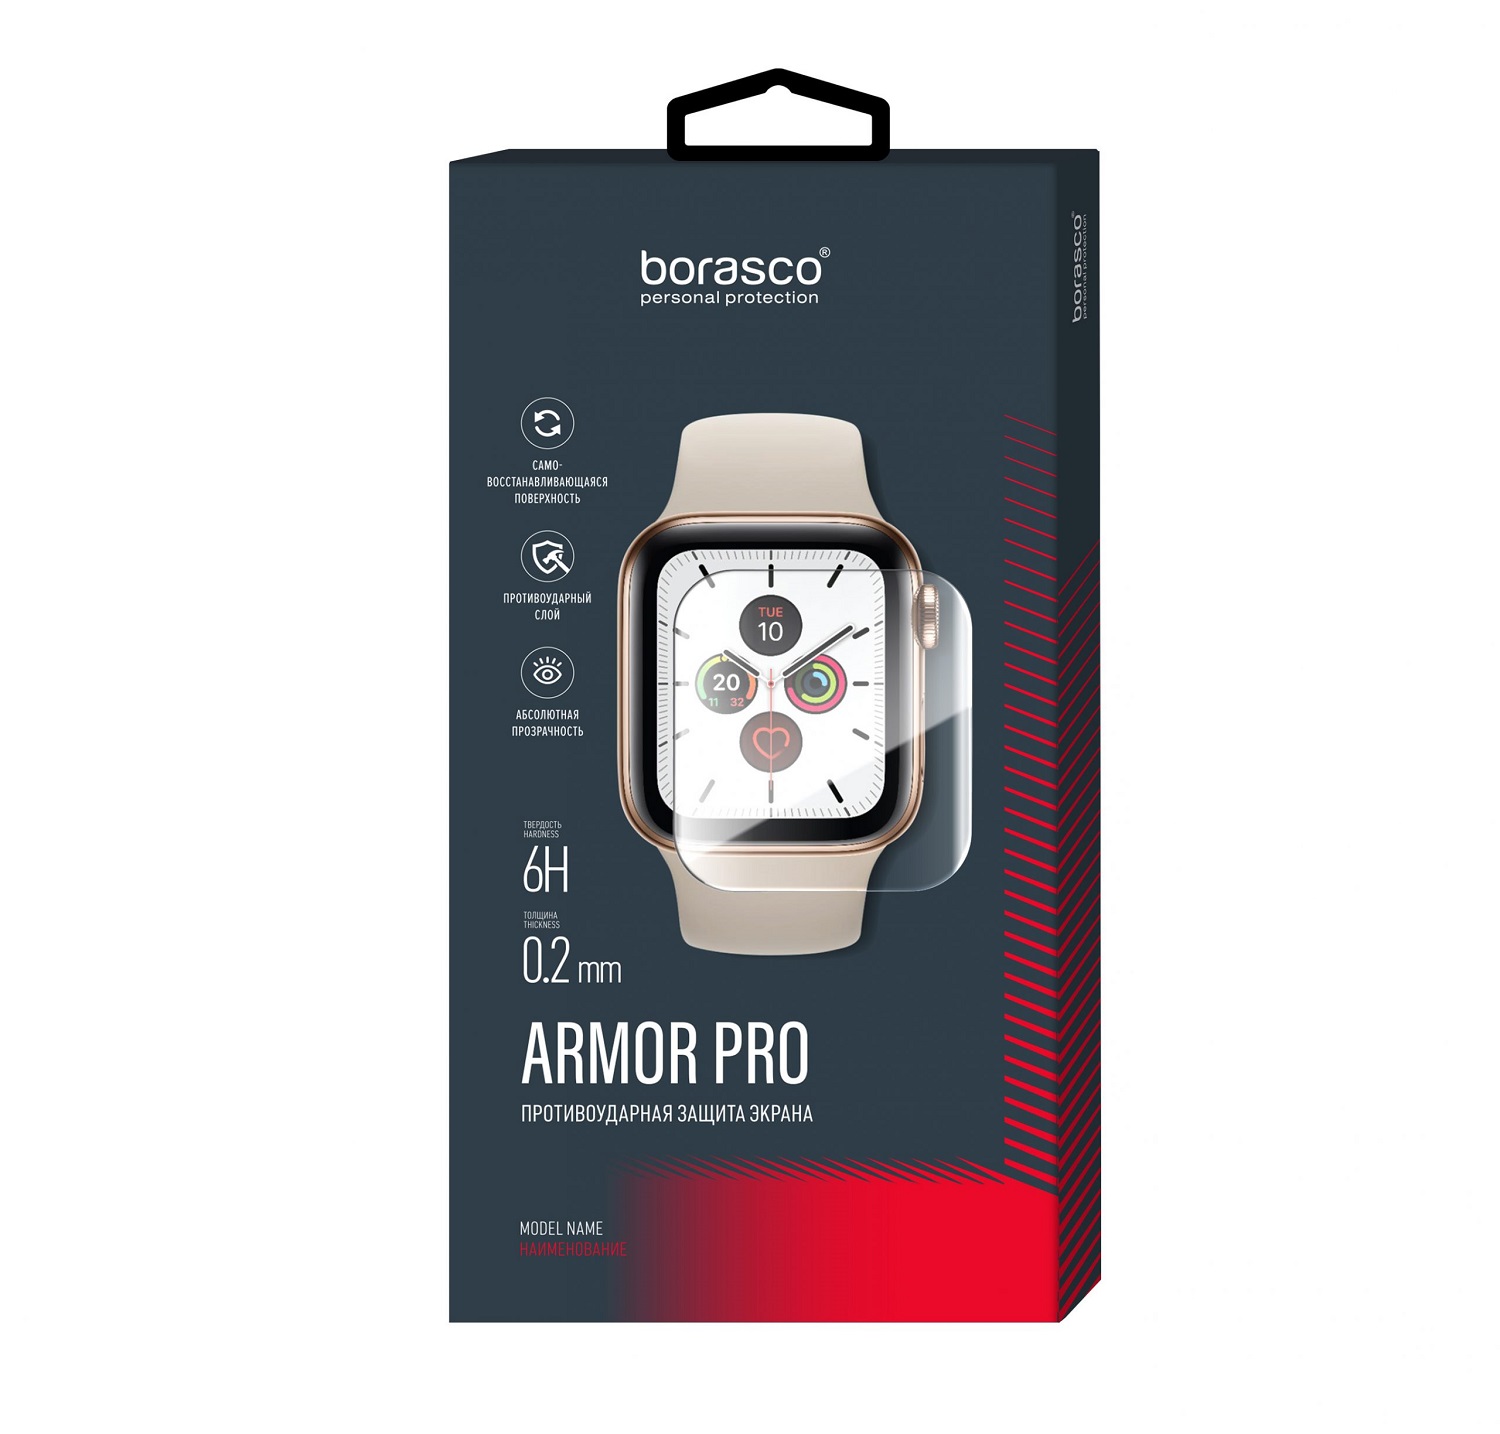 Защита экрана BoraSCO Armor Pro для Huawei Watch fit защита экрана borasco armor pro для oneplus 9 pro